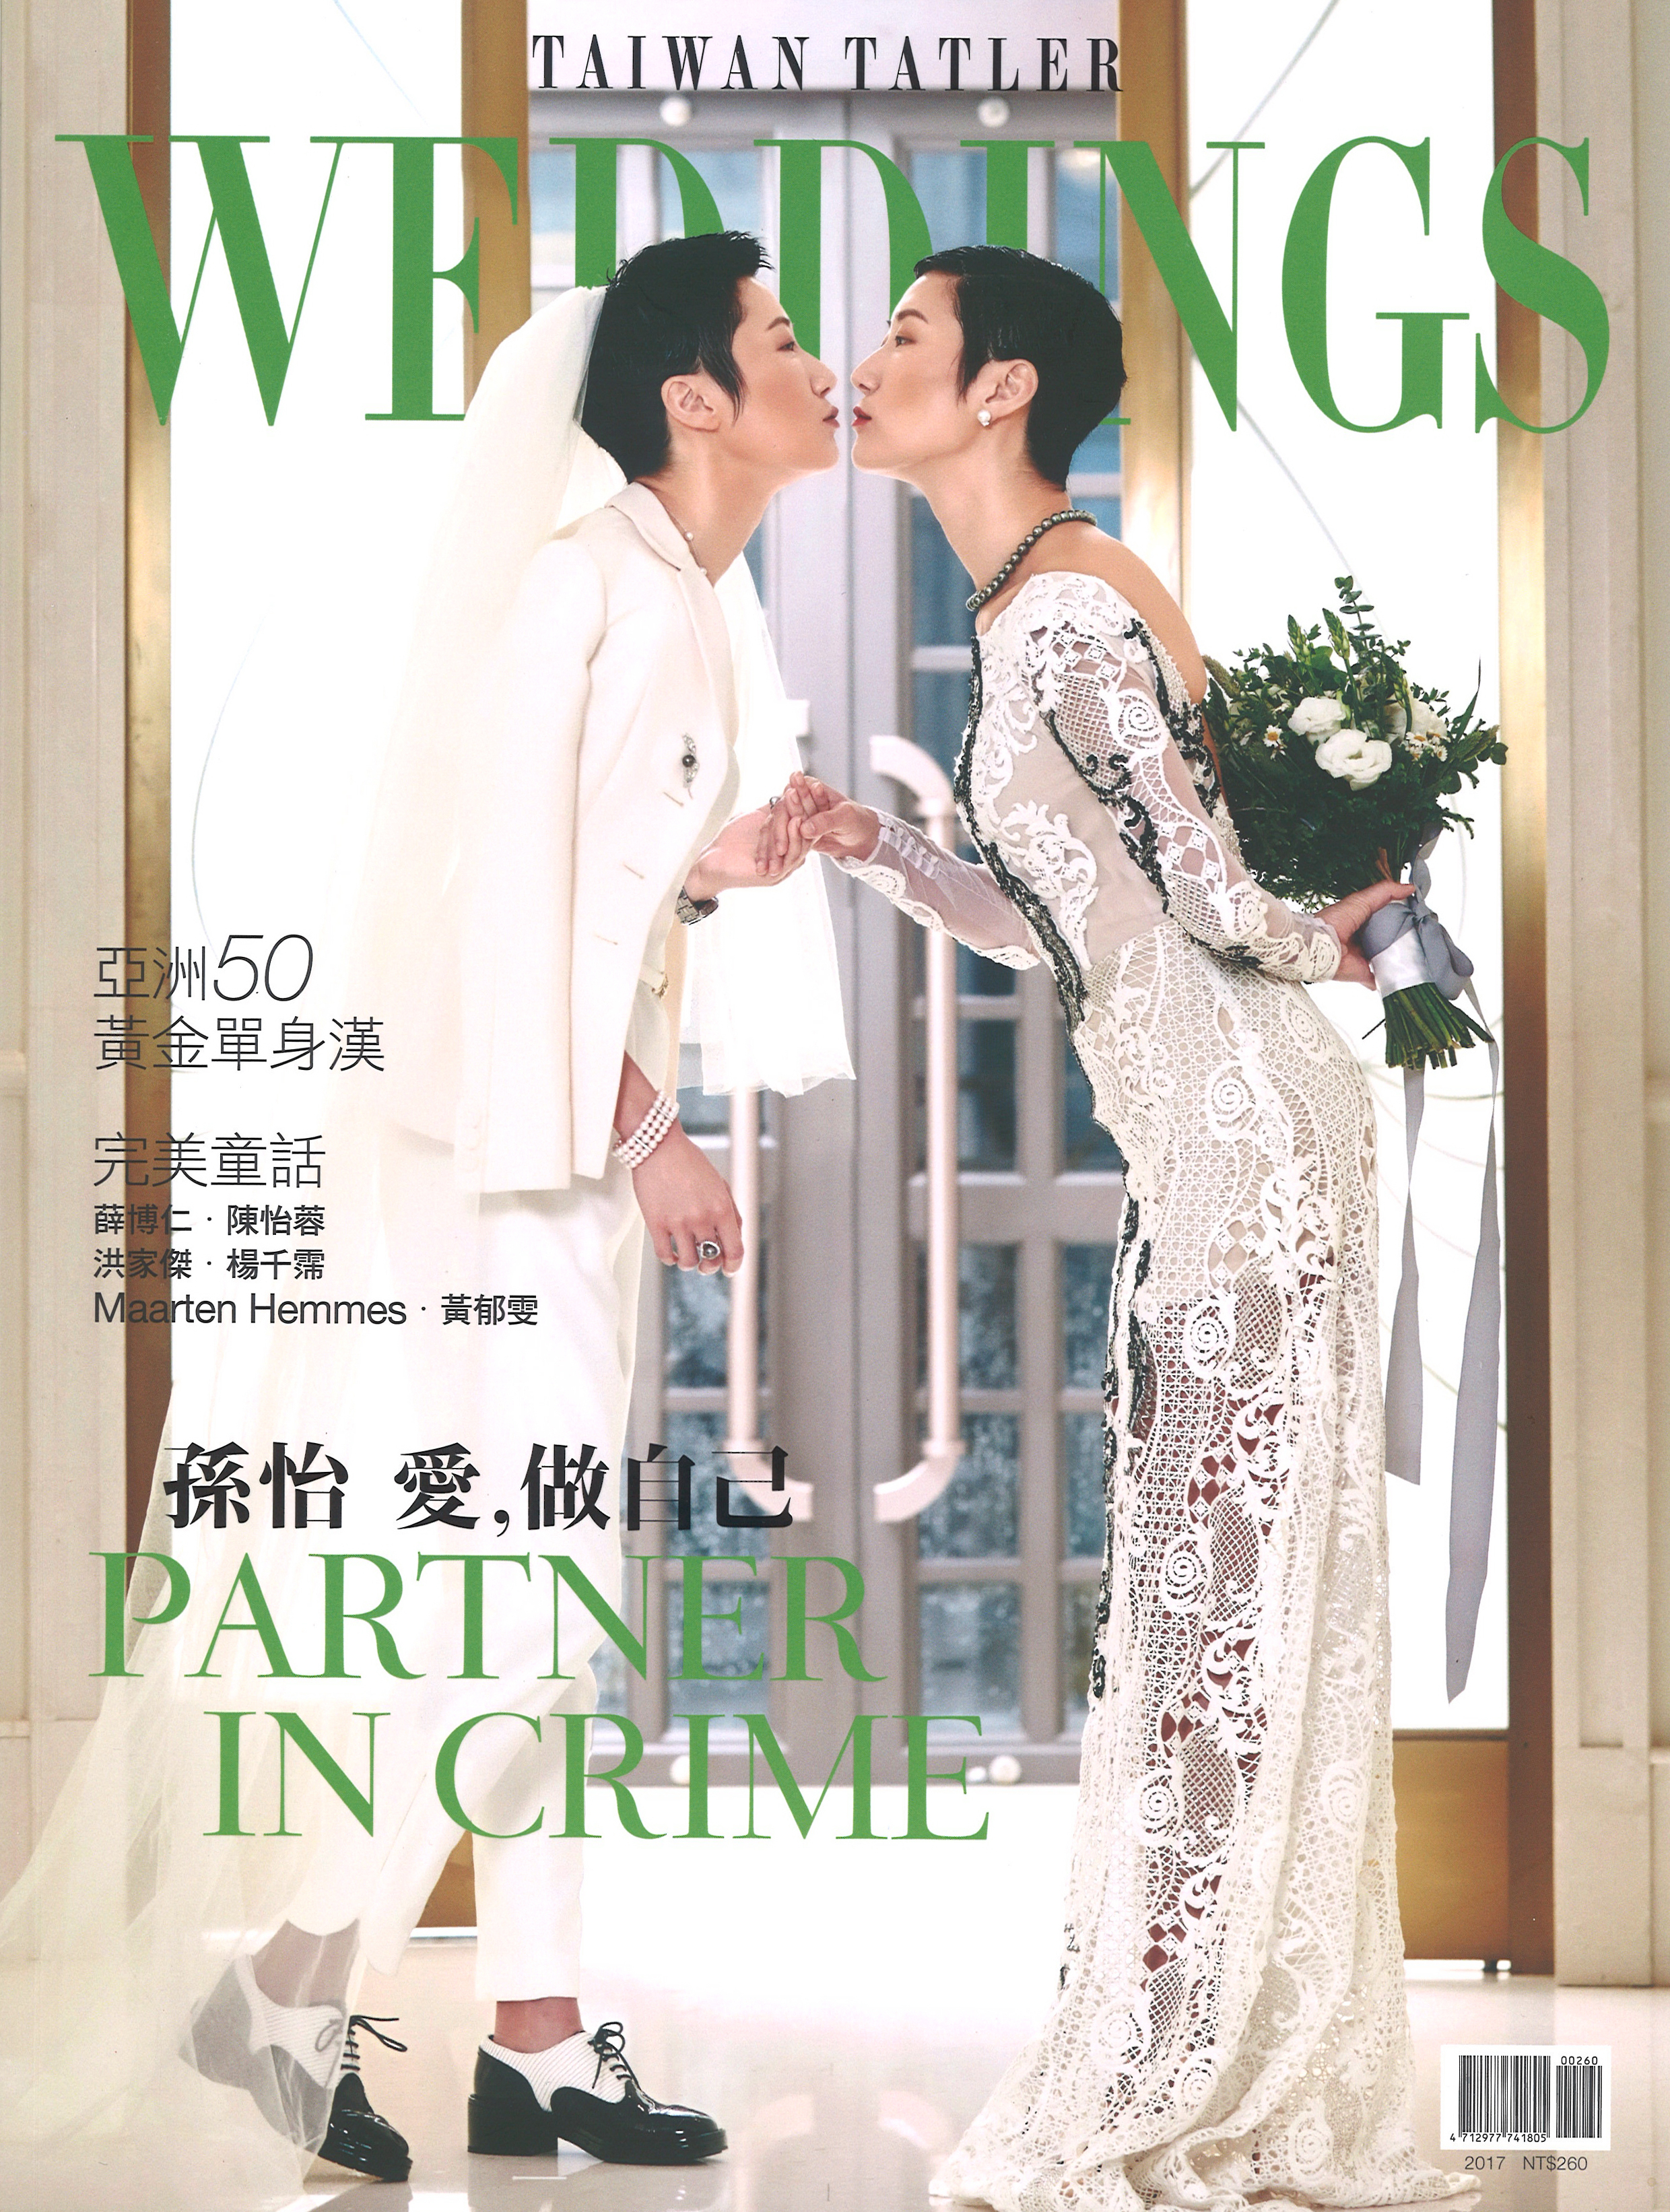 TAIWAN TATLER WEDDINGS 2017